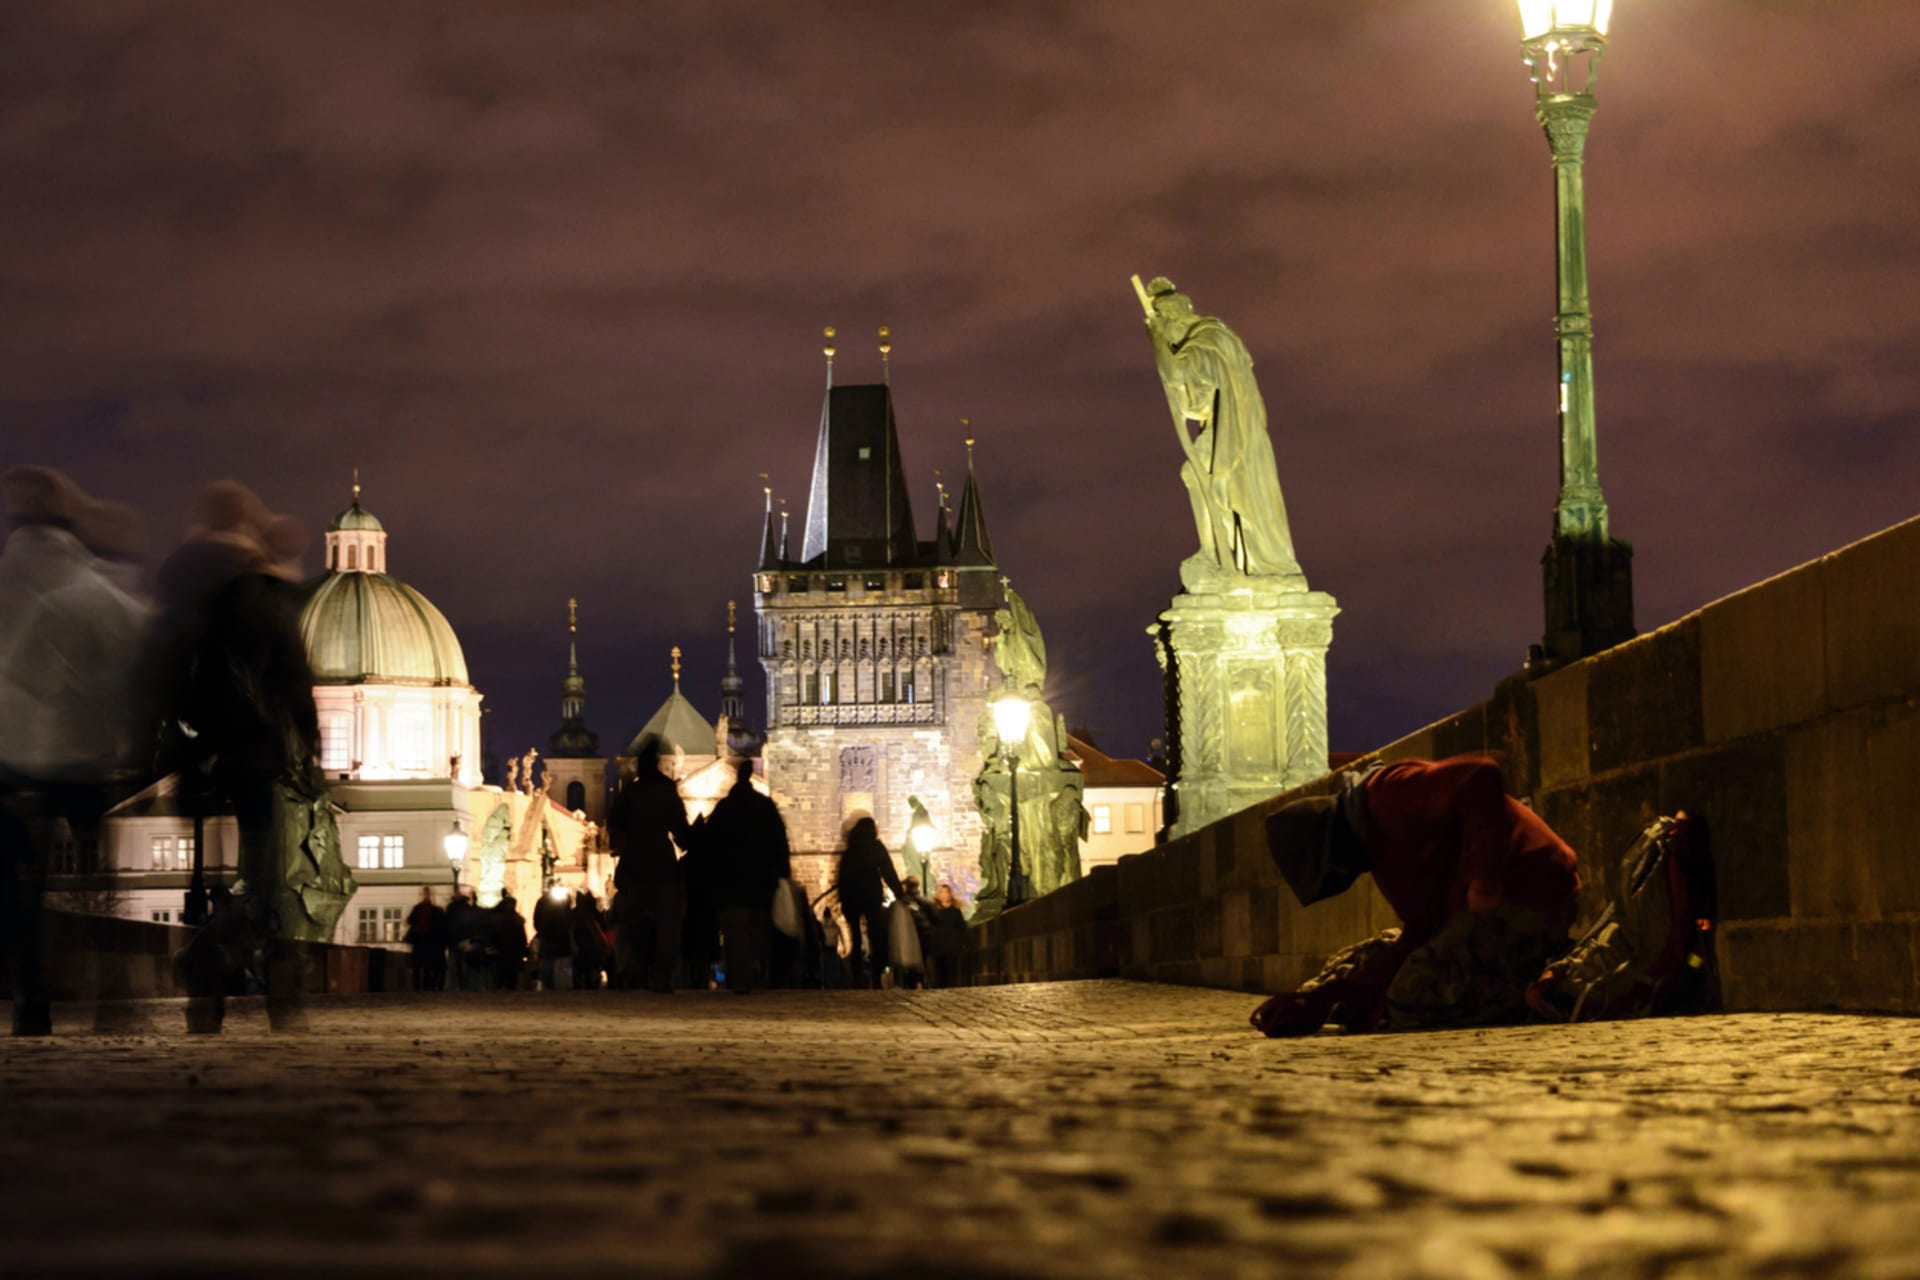 Šokujte třeba procházkou po Praze s průvodcem bezdomovcem.